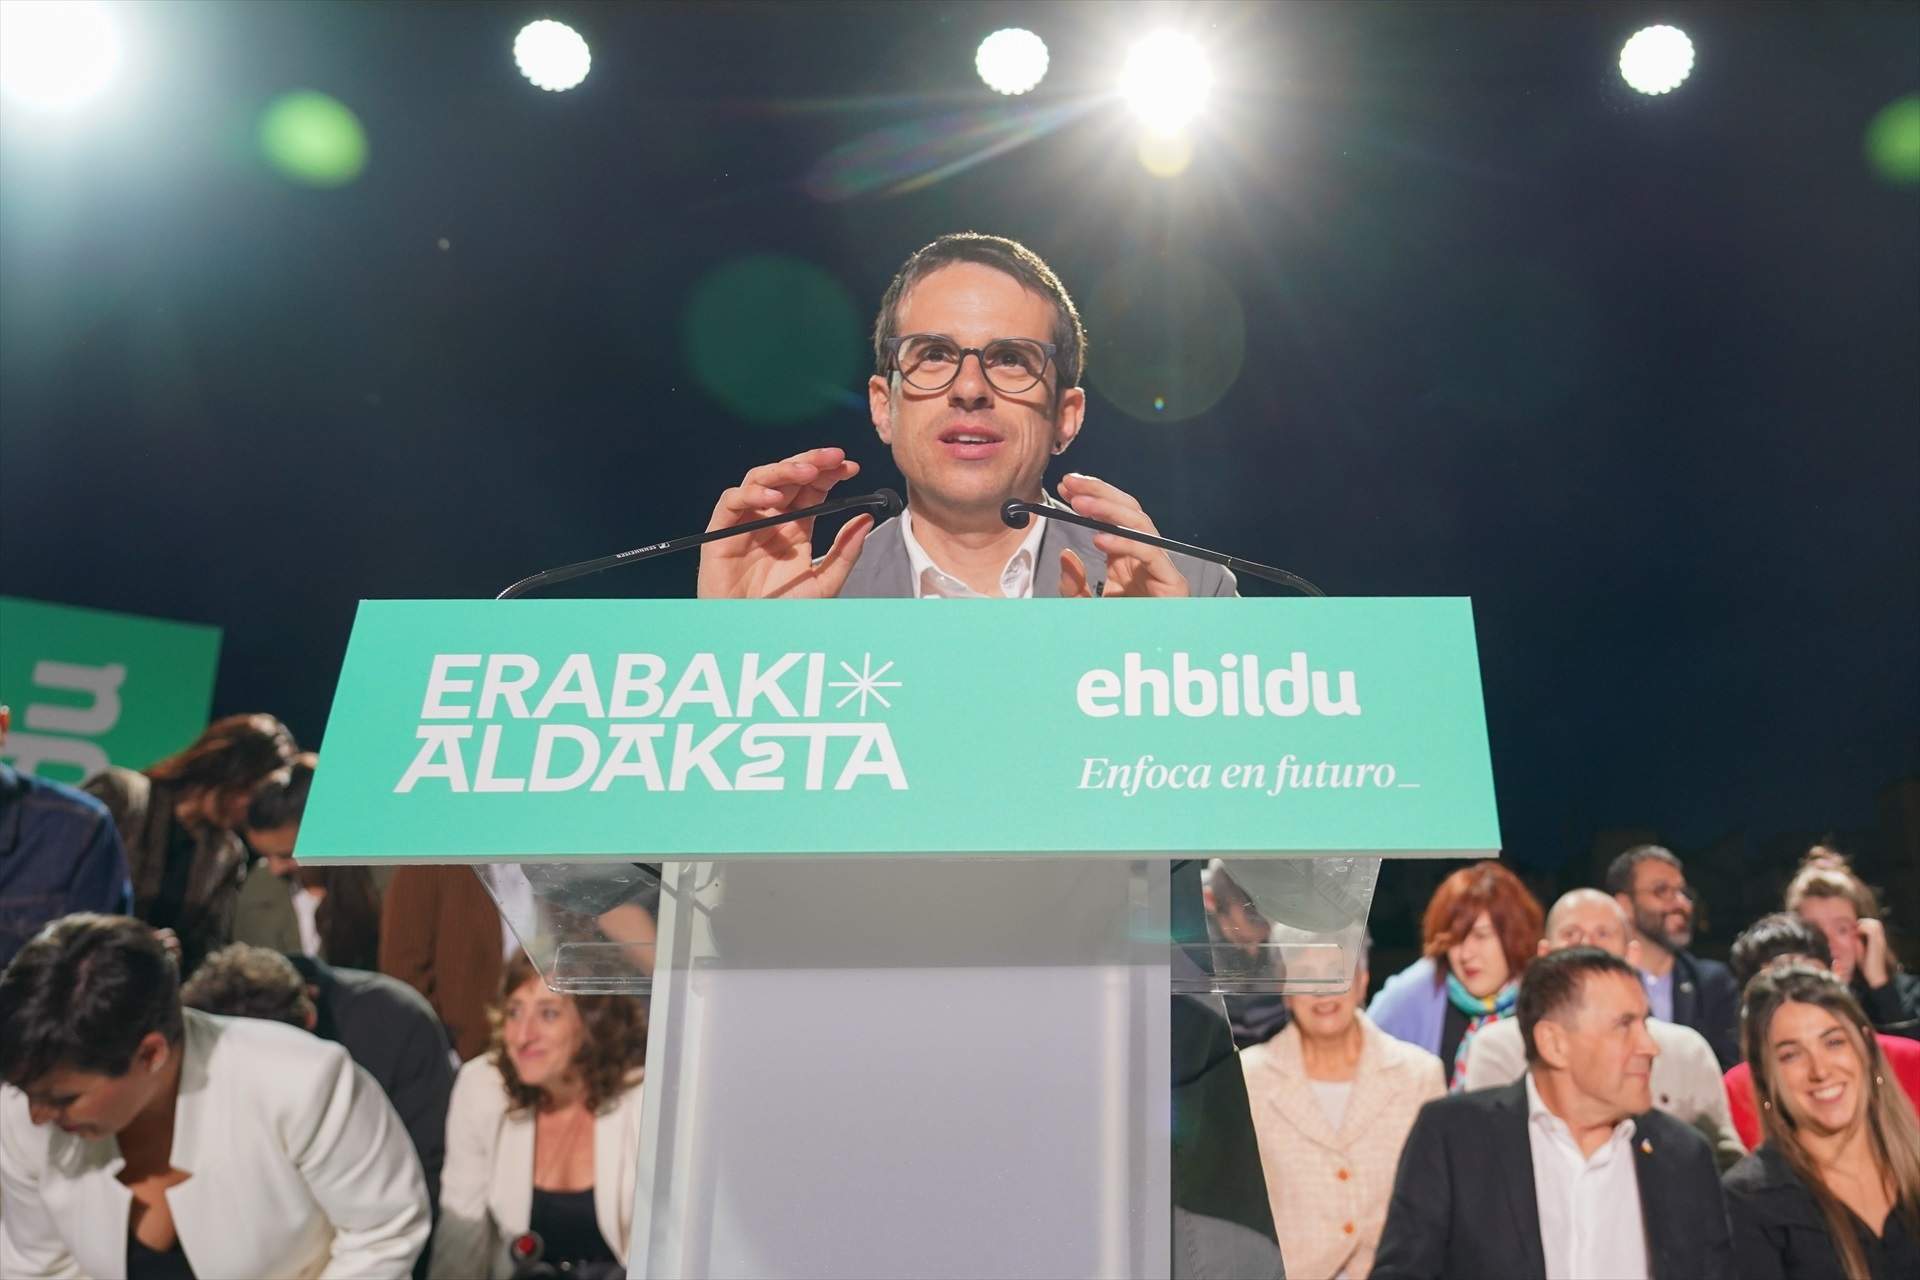 Bildu s'imposaria per primer cop al PNB en percentatge de vot a les eleccions basques, segons el CIS